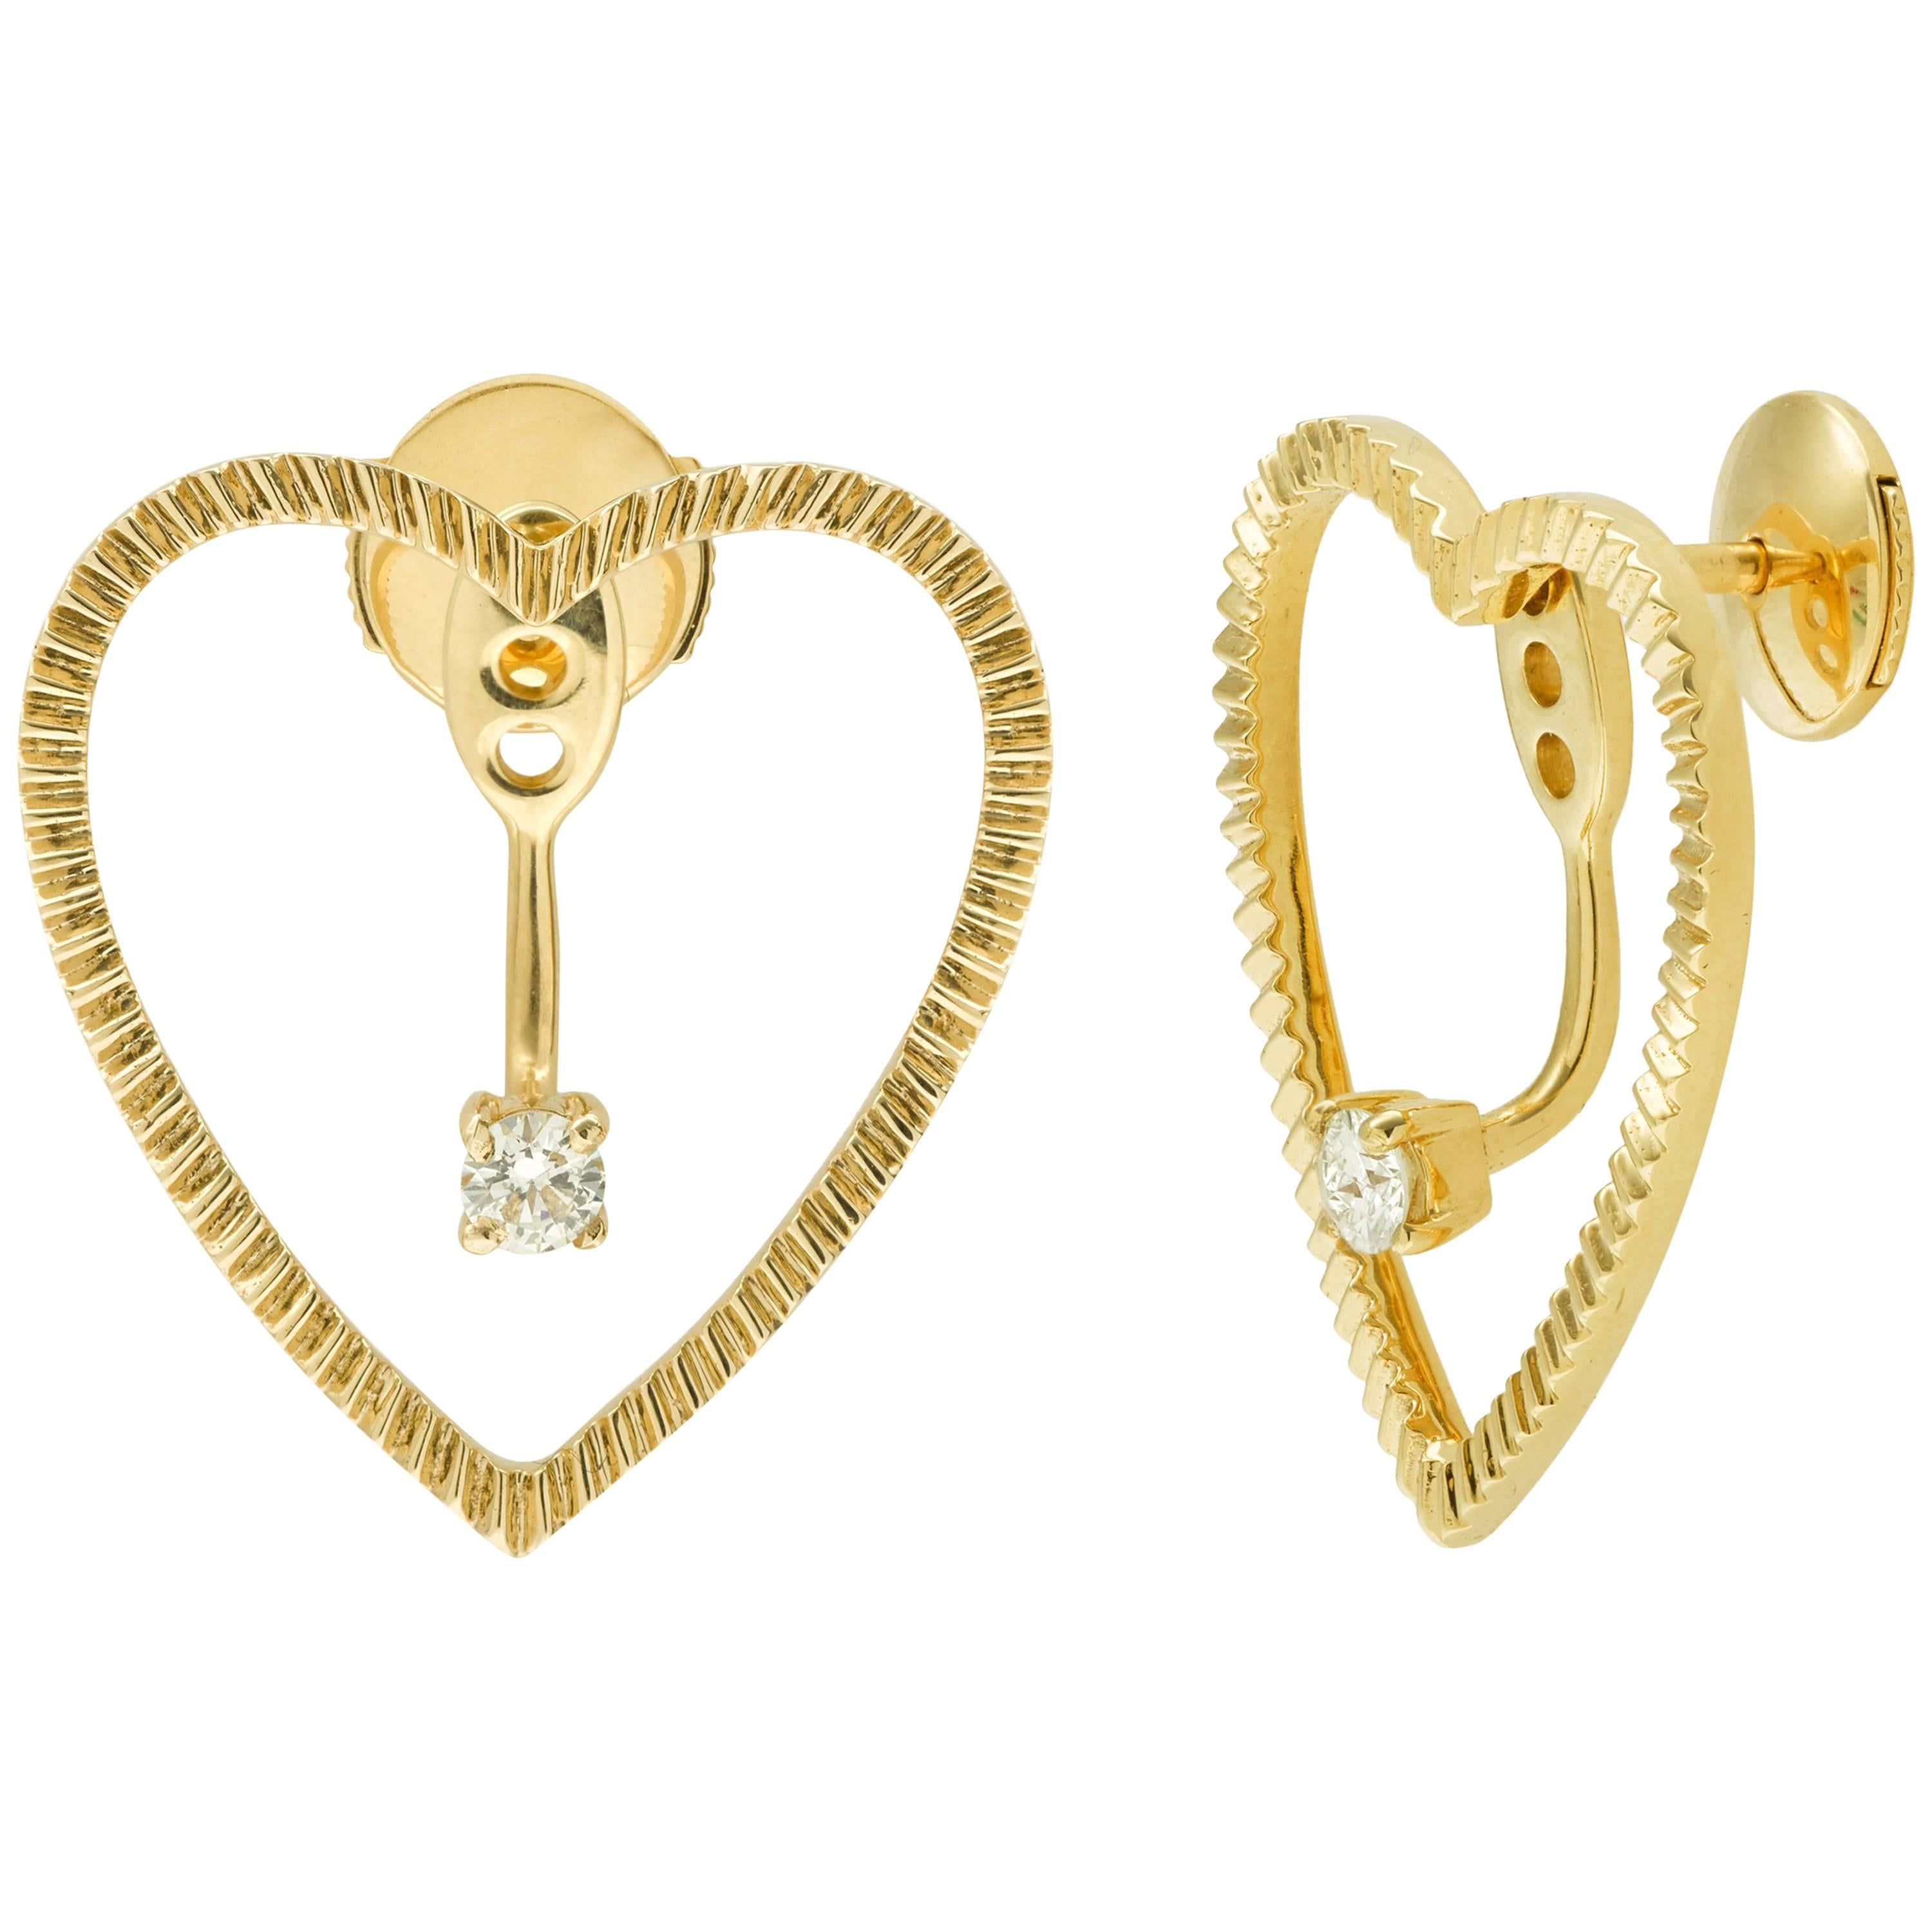 Yvonne Leon's Earring Heart with Diamonds in 18 Karat Gold For Sale